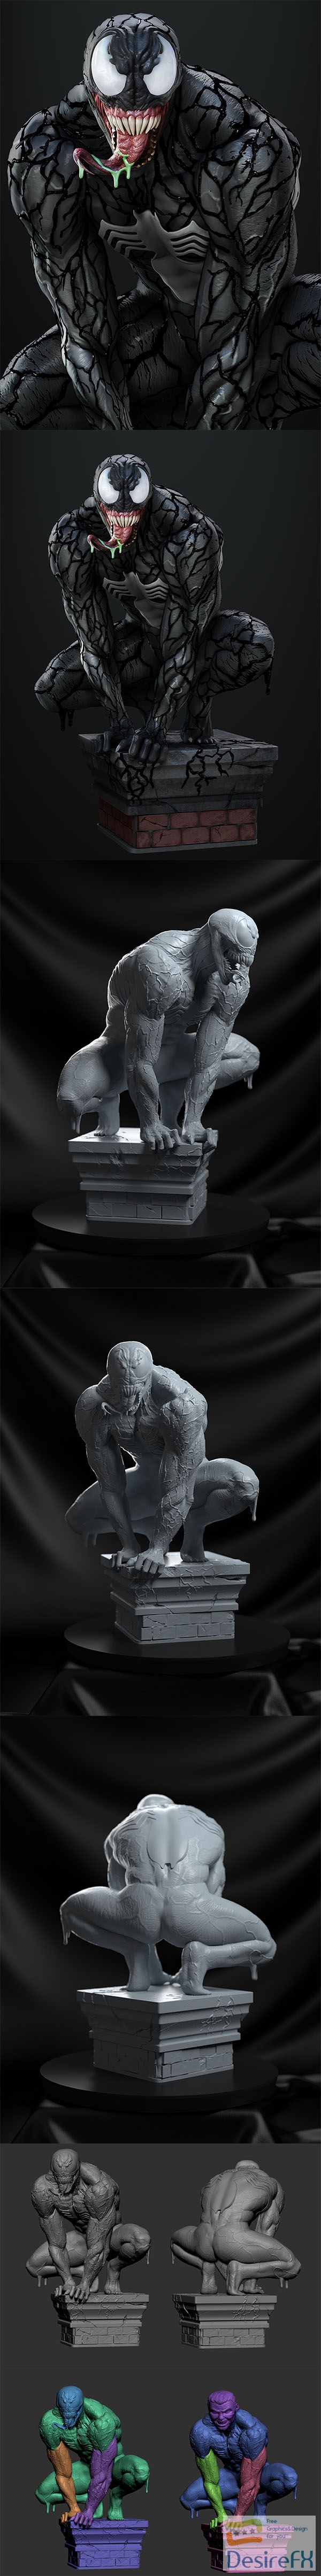 Vinicius Cardoso – Venom Statue – 3D Print